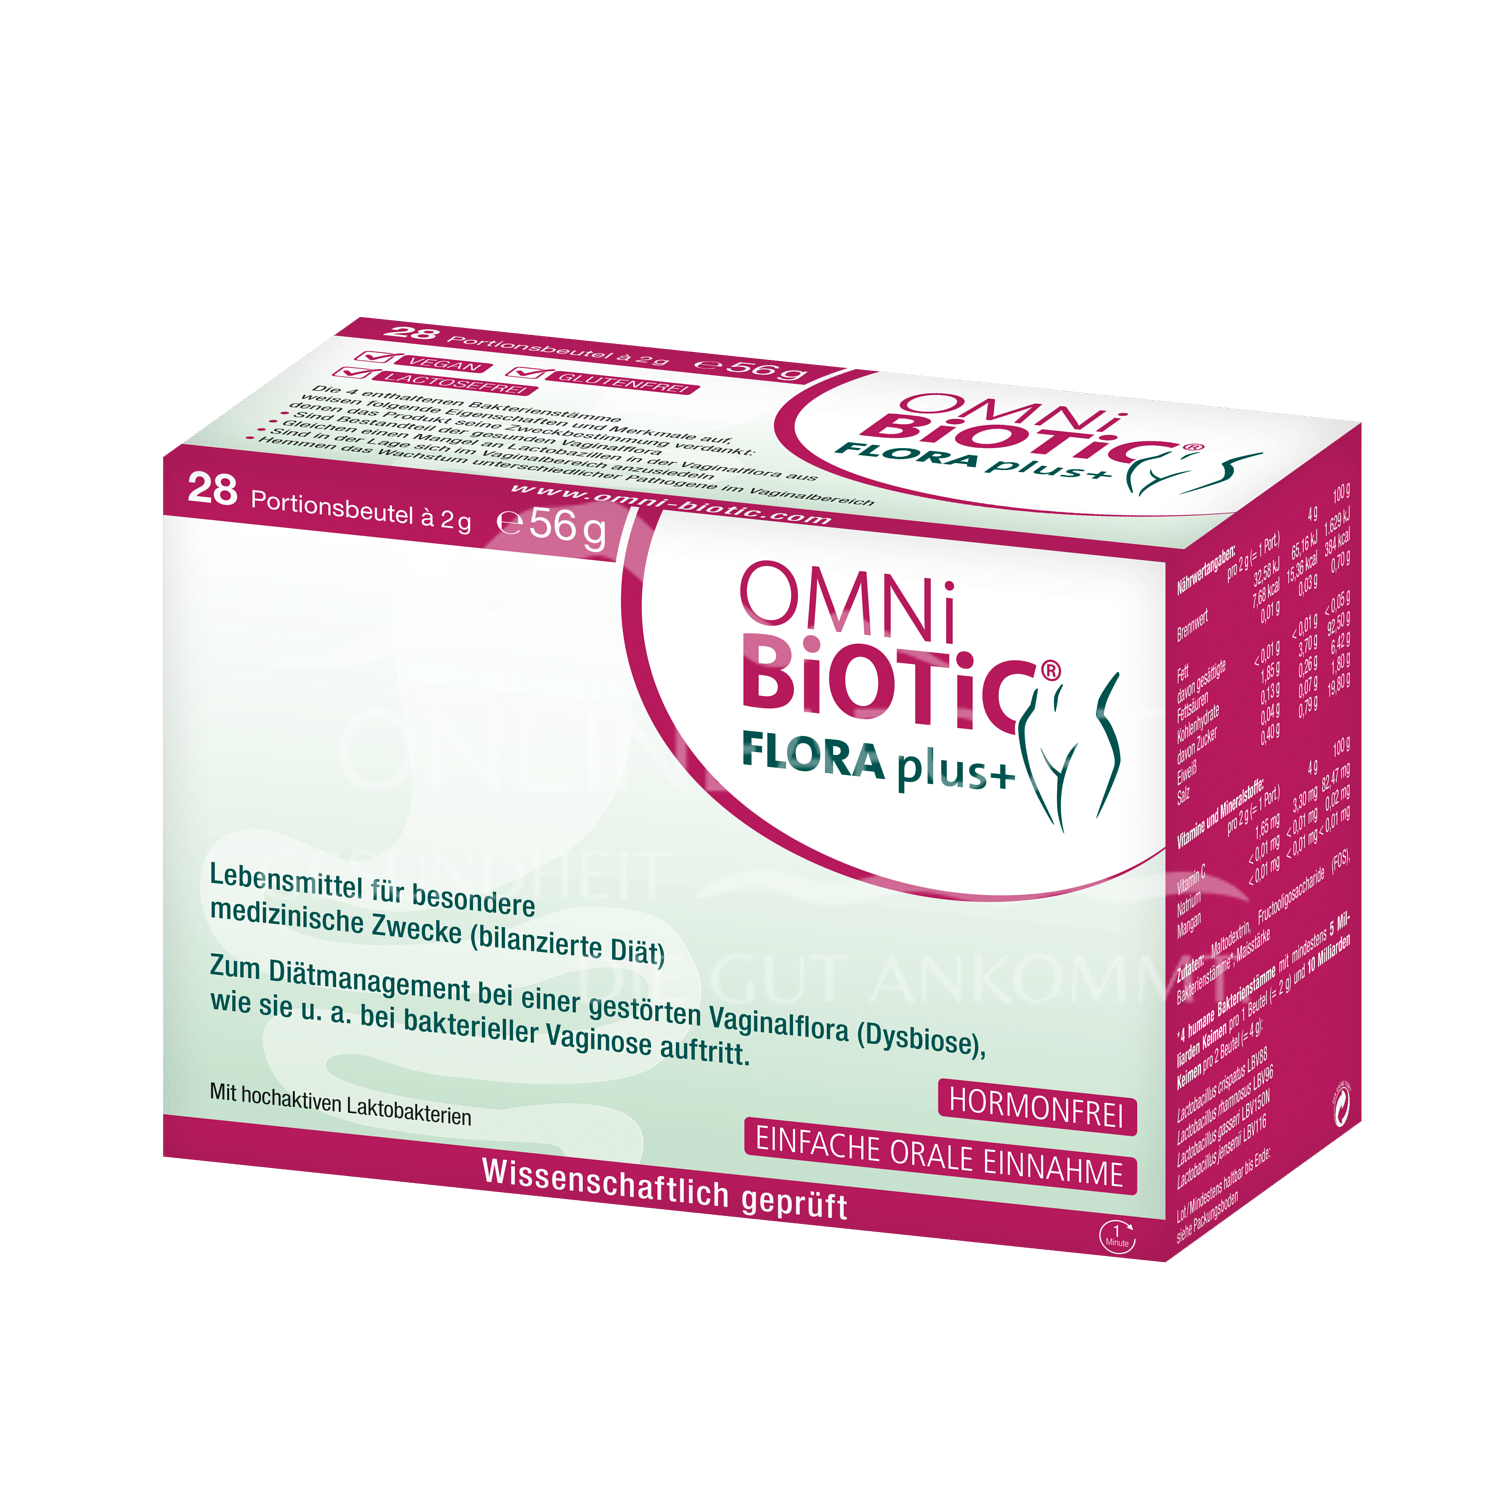 OMNi-BiOTiC® FLORA plus+ 2g